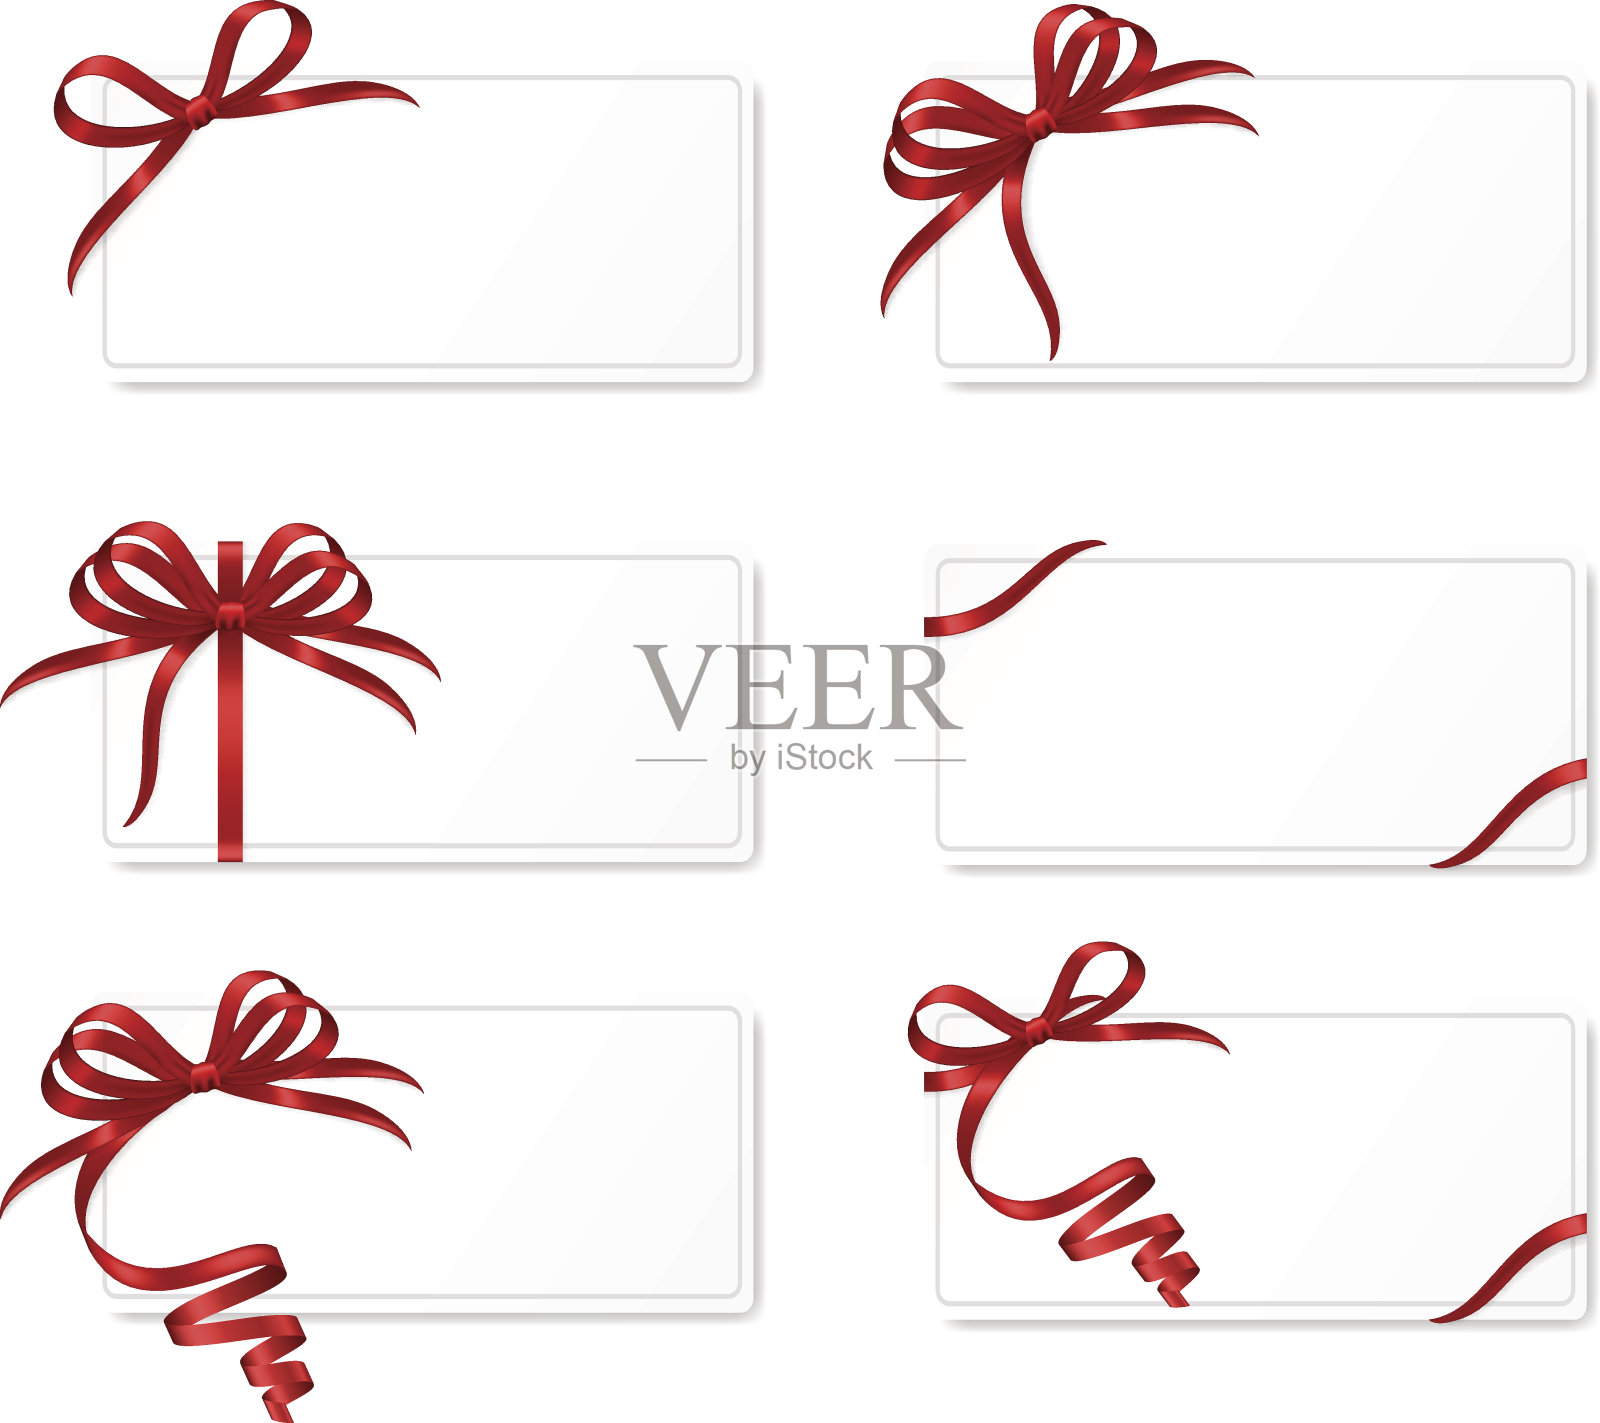 一套带有红色蝴蝶结和丝带的礼品卡。插画图片素材